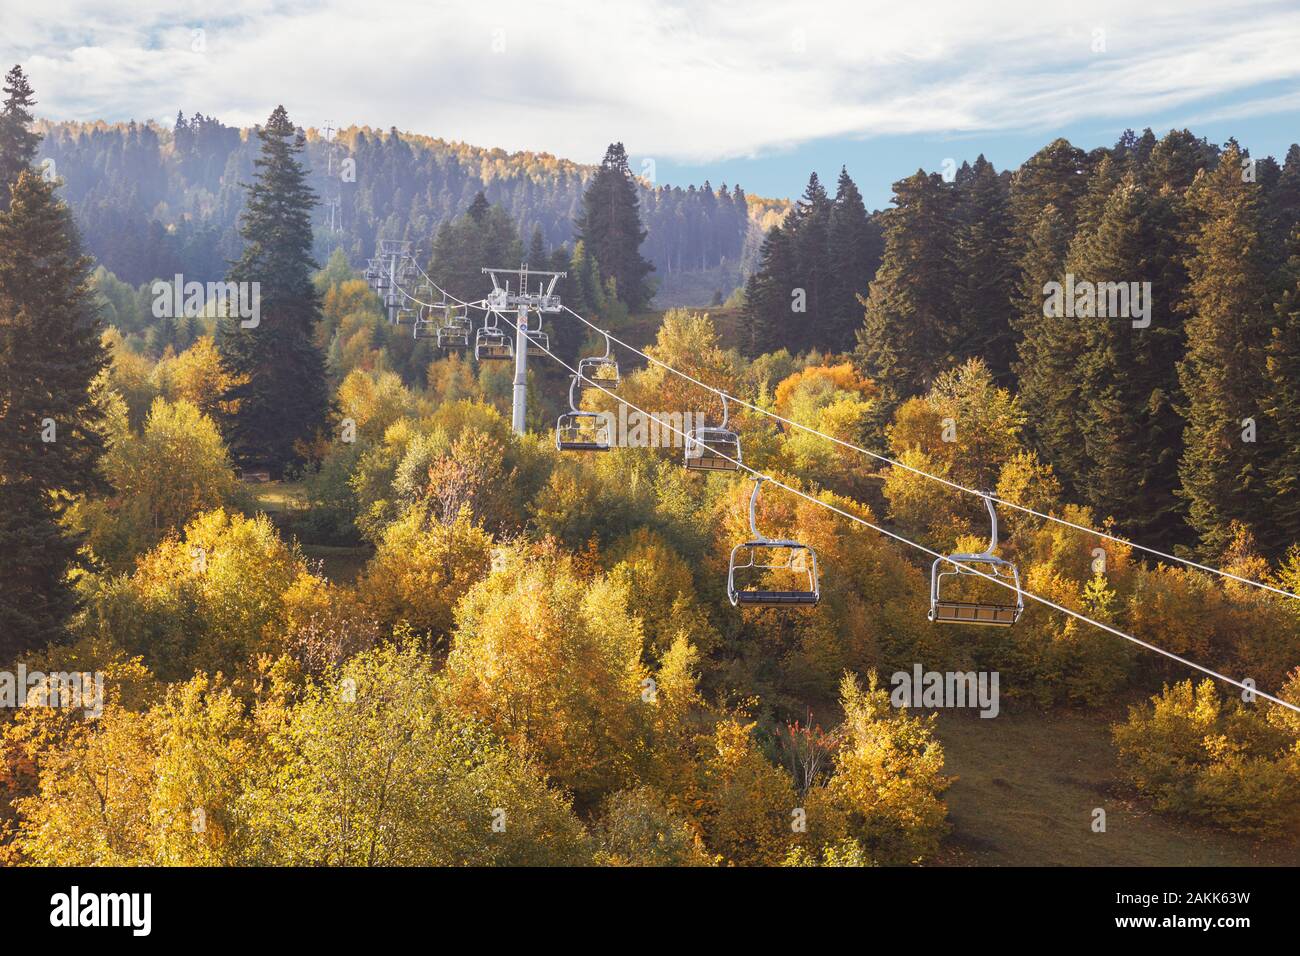 Station de ski en automne. Télésiège vide au-dessus des arbres à feuillage jaune. Paysage de montagne ensoleillée d'automne. La Géorgie, Svaneti Banque D'Images